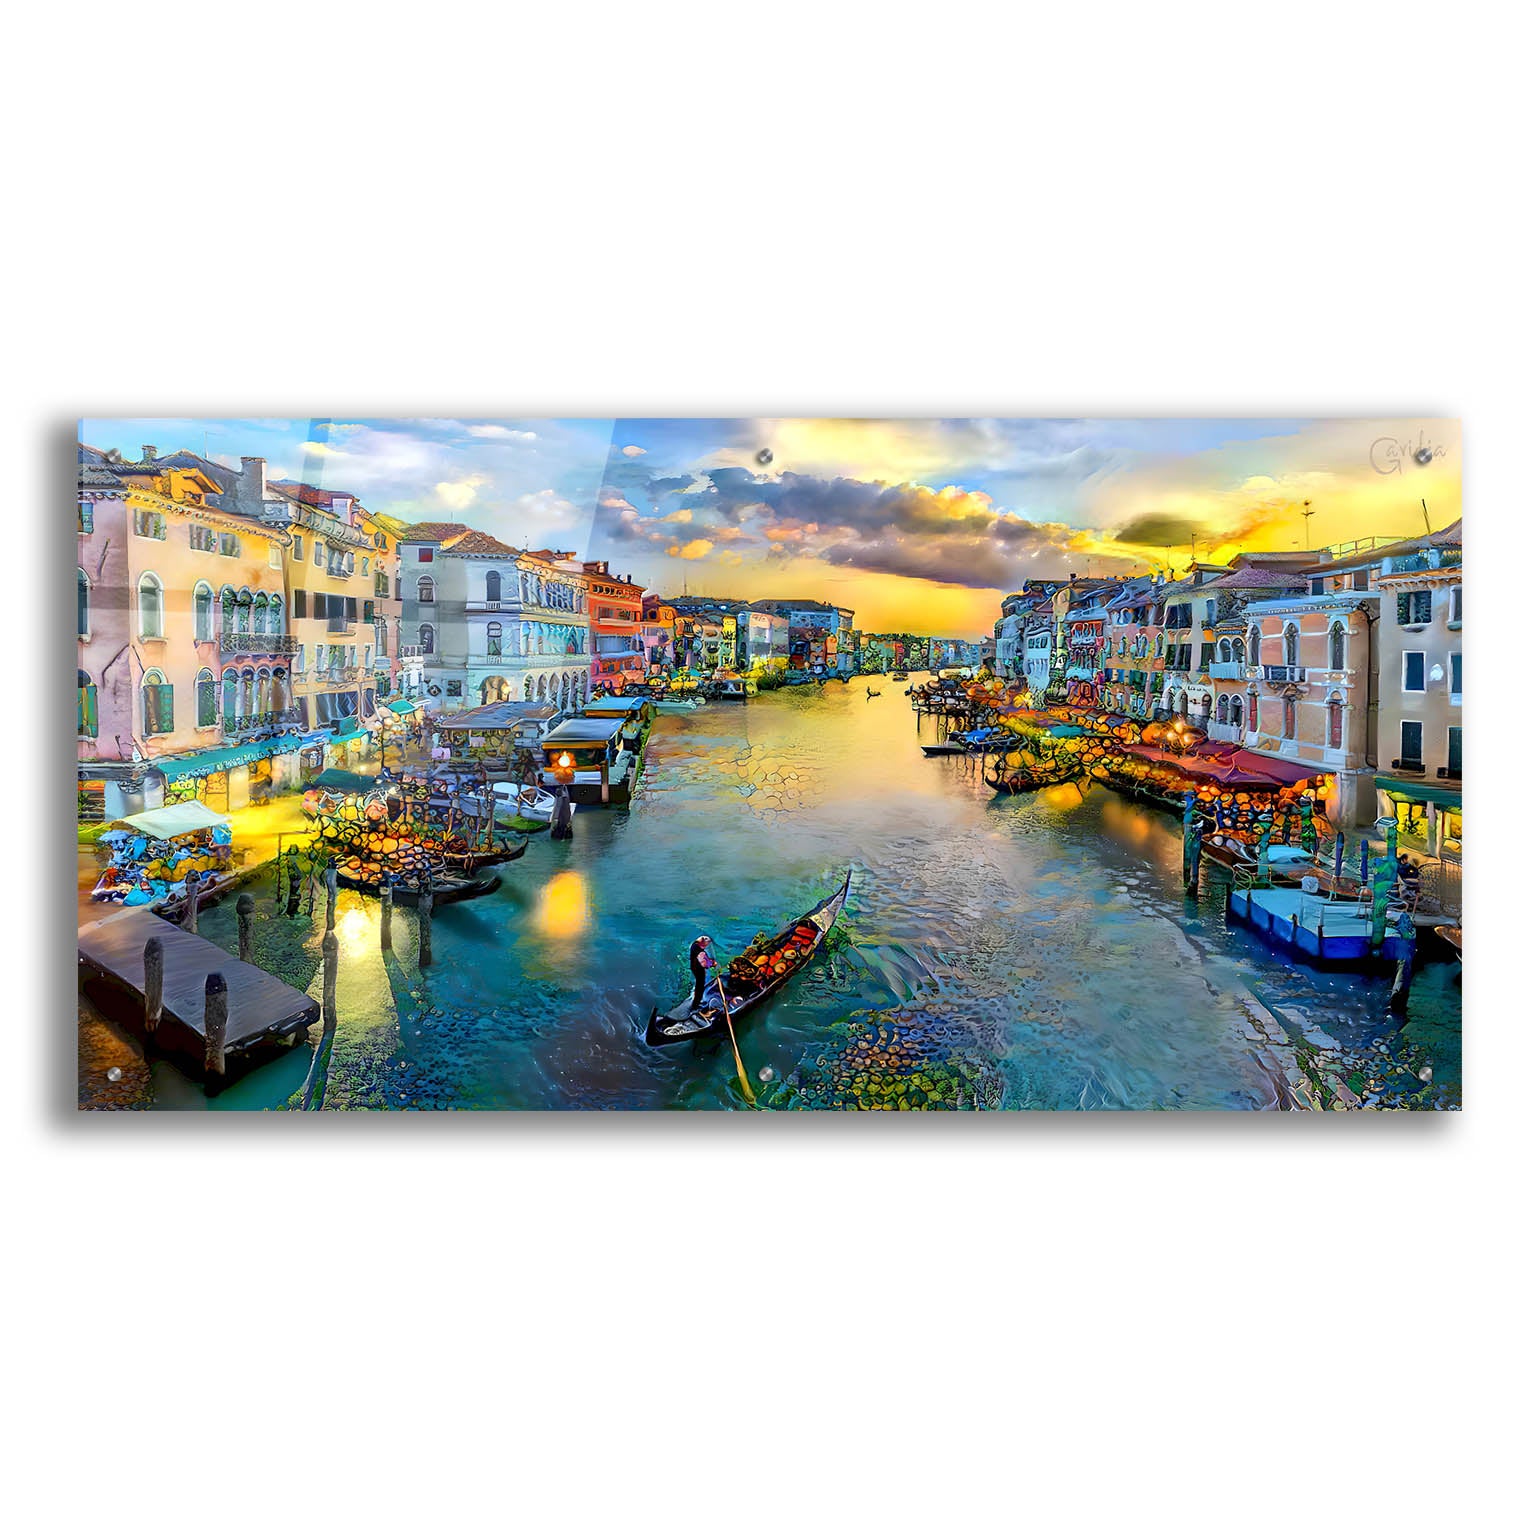 Epic Art 'Venice Italy Grand Canal' by Pedro Gavidia, Acrylic Glass Wall Art,48x24